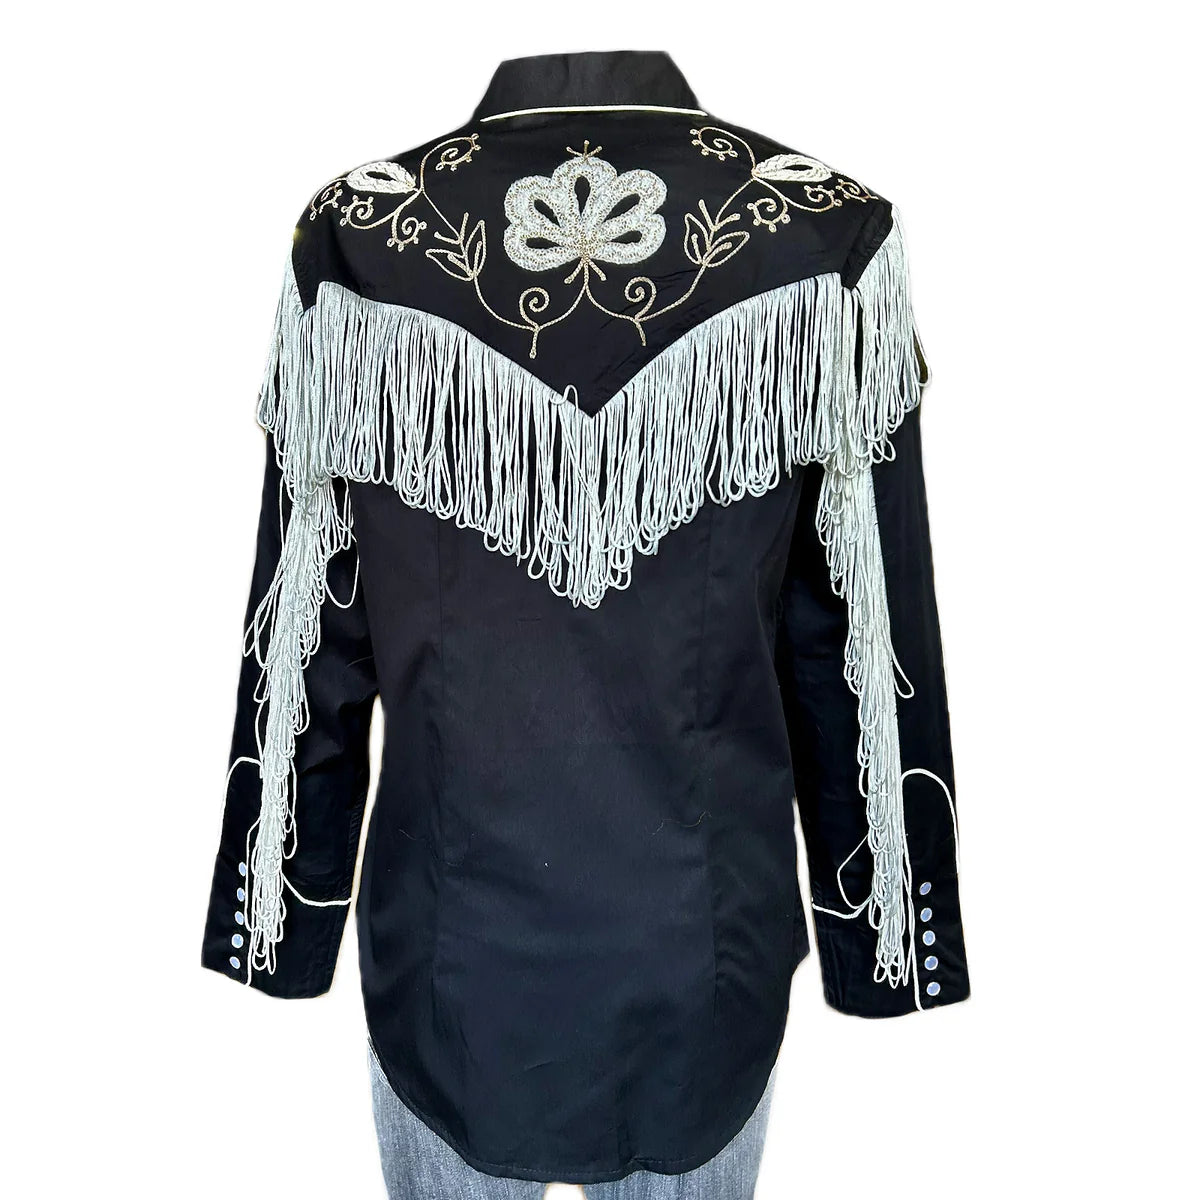 Vintage Inspired Western Shirt Ladies Rockmount Fringe Black Back